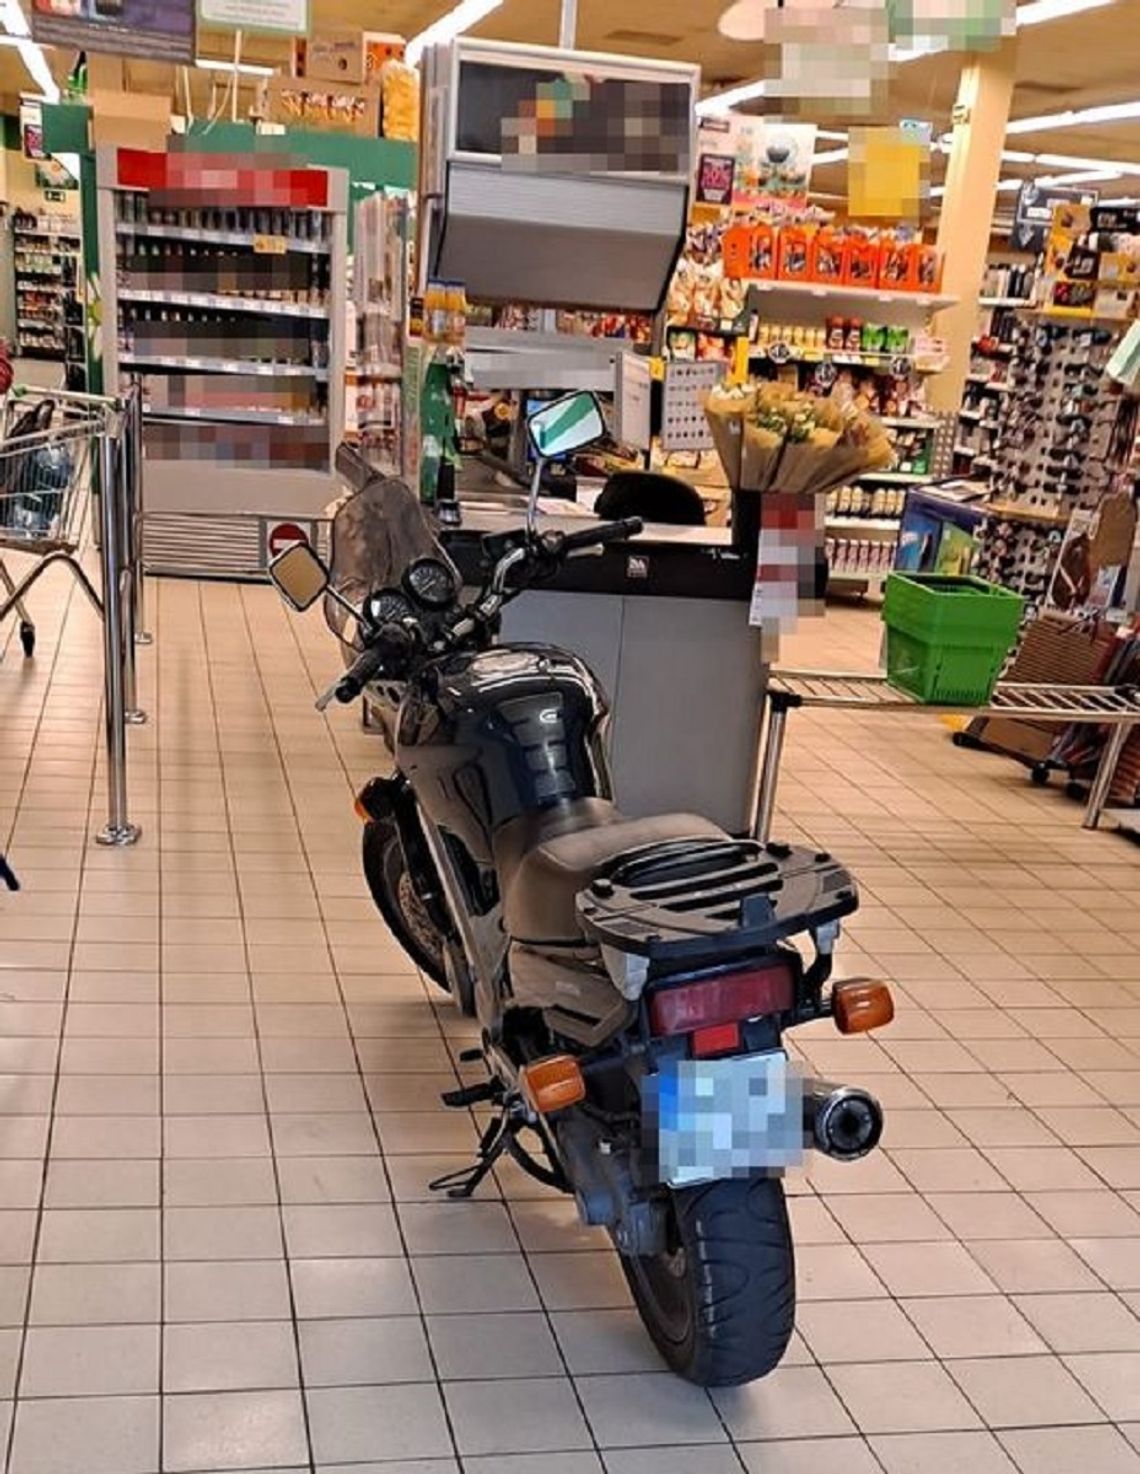 33-letni mężczyzna wjechał motocyklem do supermarketu i zaparkował przy kasach.